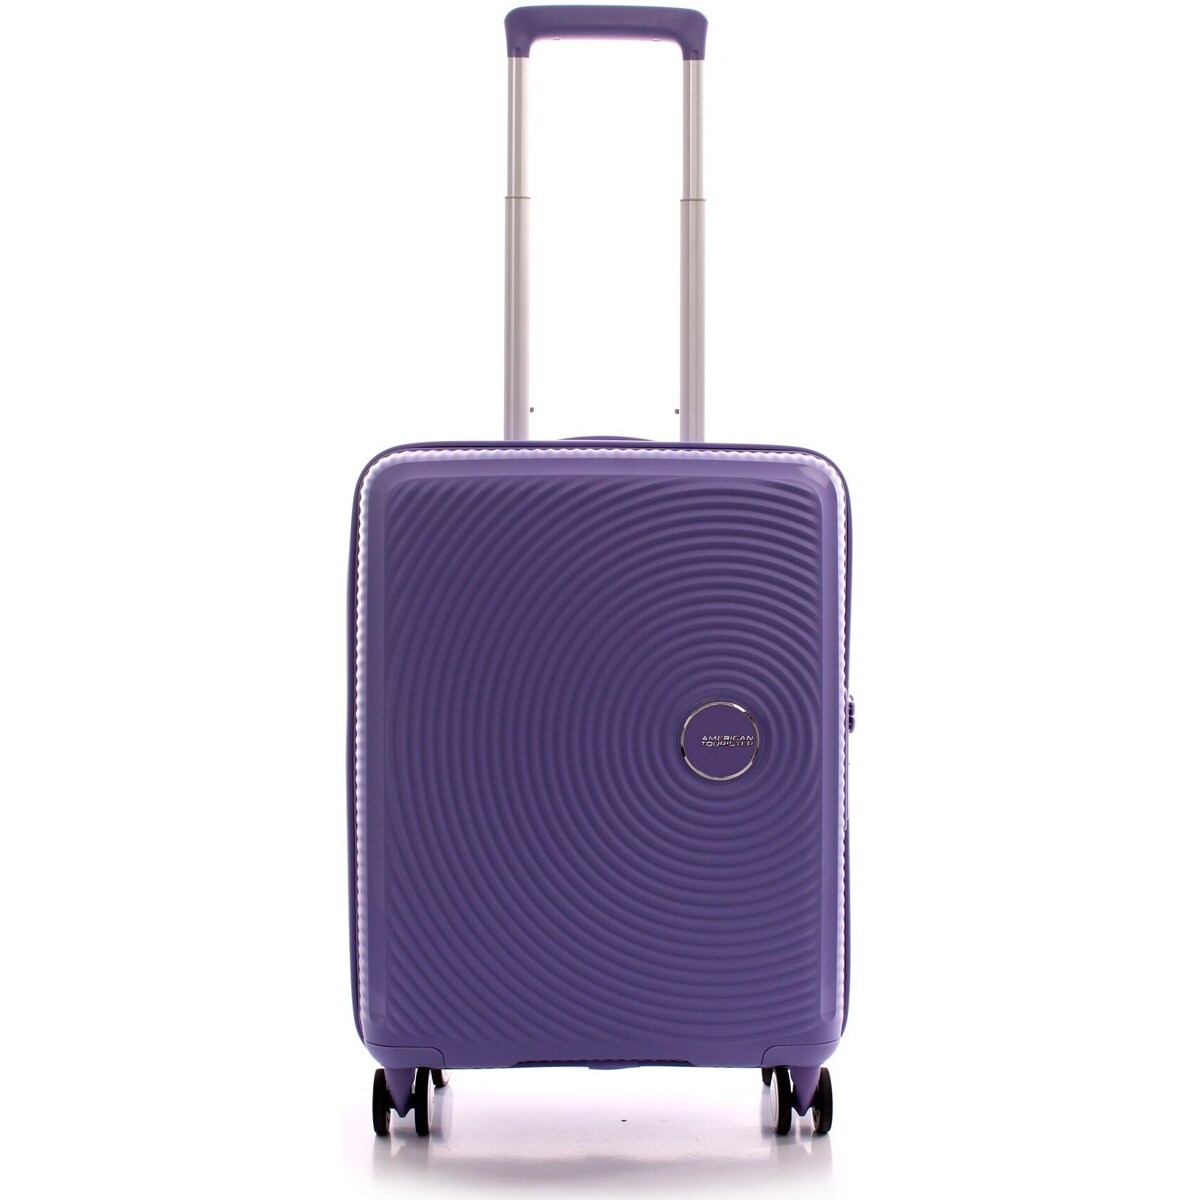 Taschen Handtasche American Tourister 32G082001 Violett